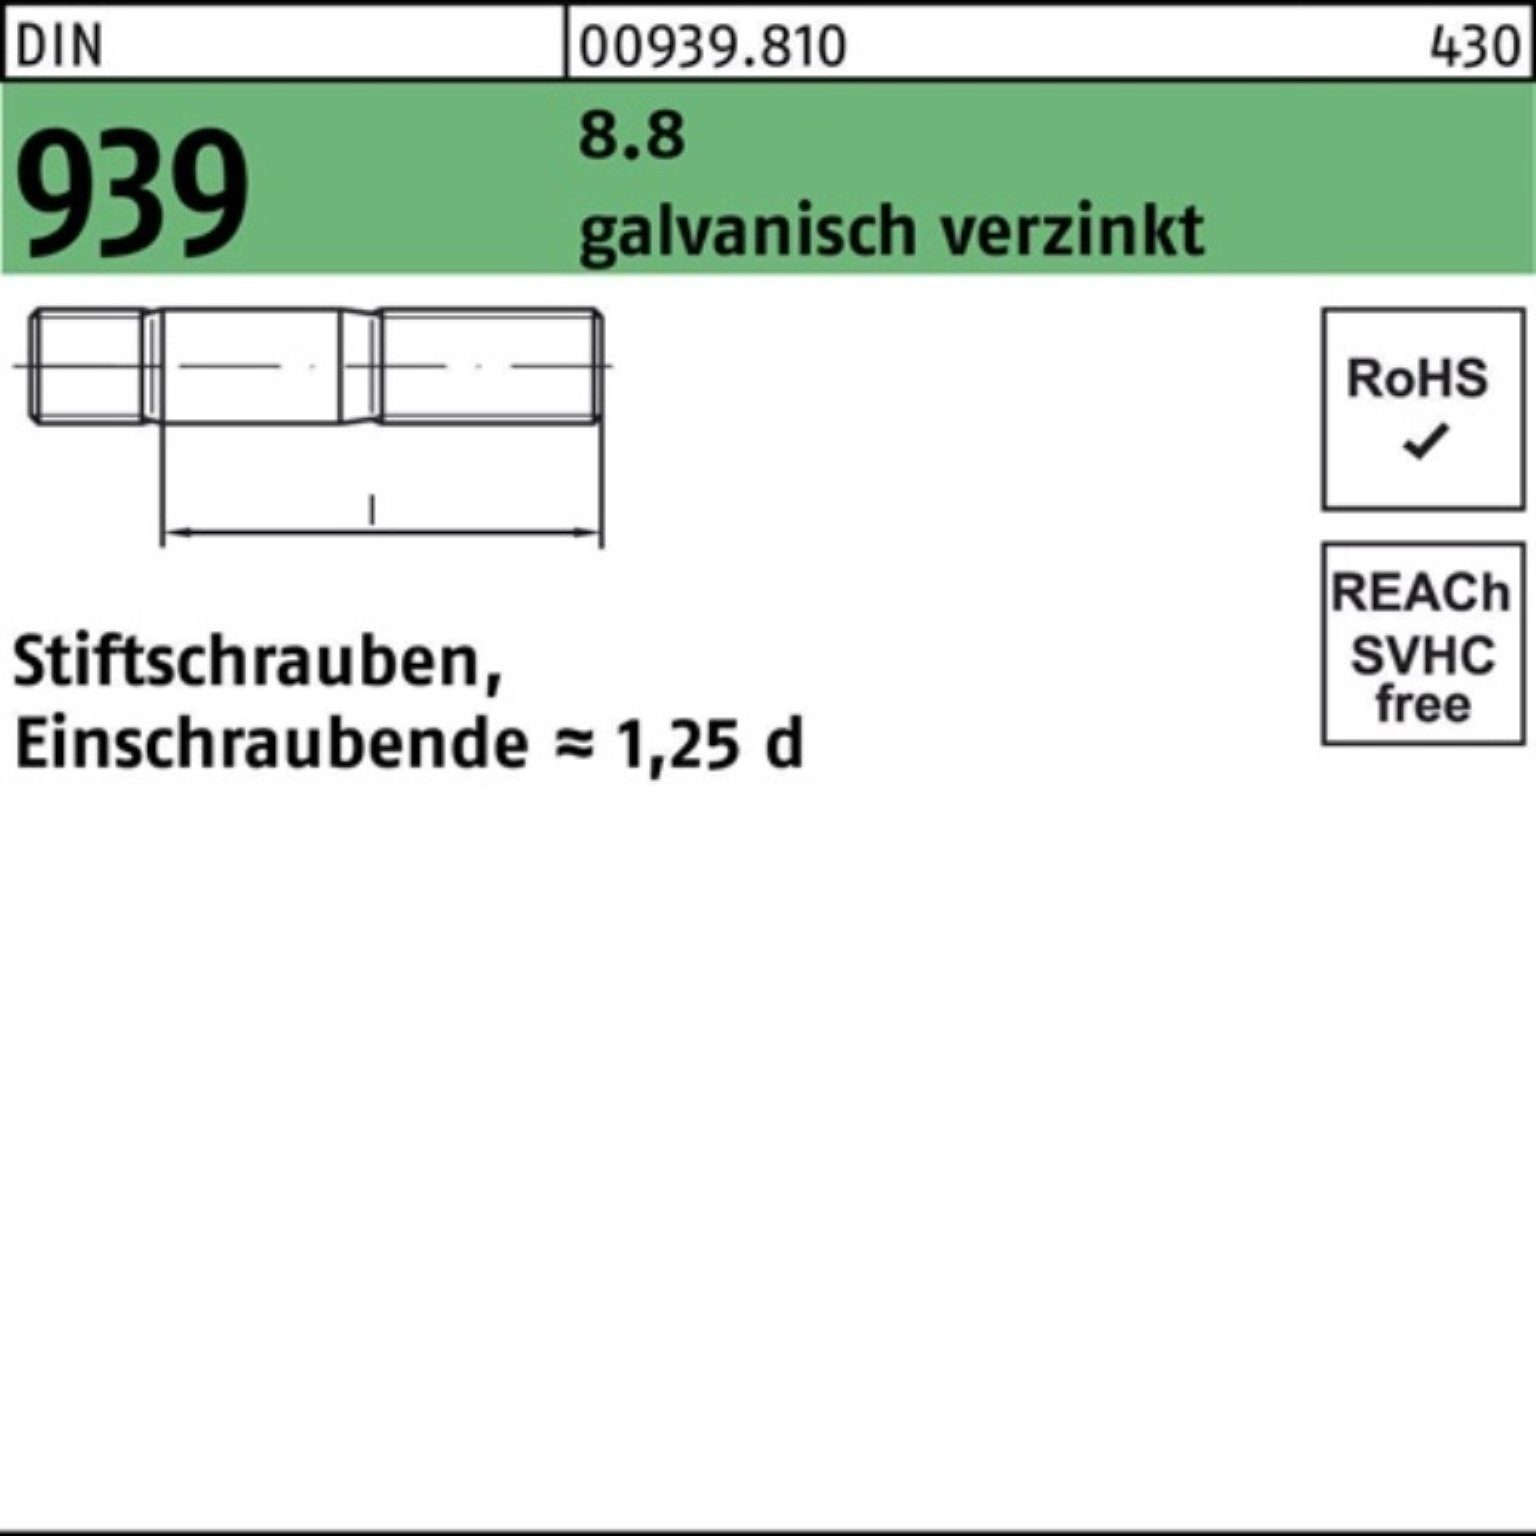 Reyher Stiftschraube 100er Pack Stiftschraube DIN M24x70 8.8 Einschraubende= 939 galv.verz